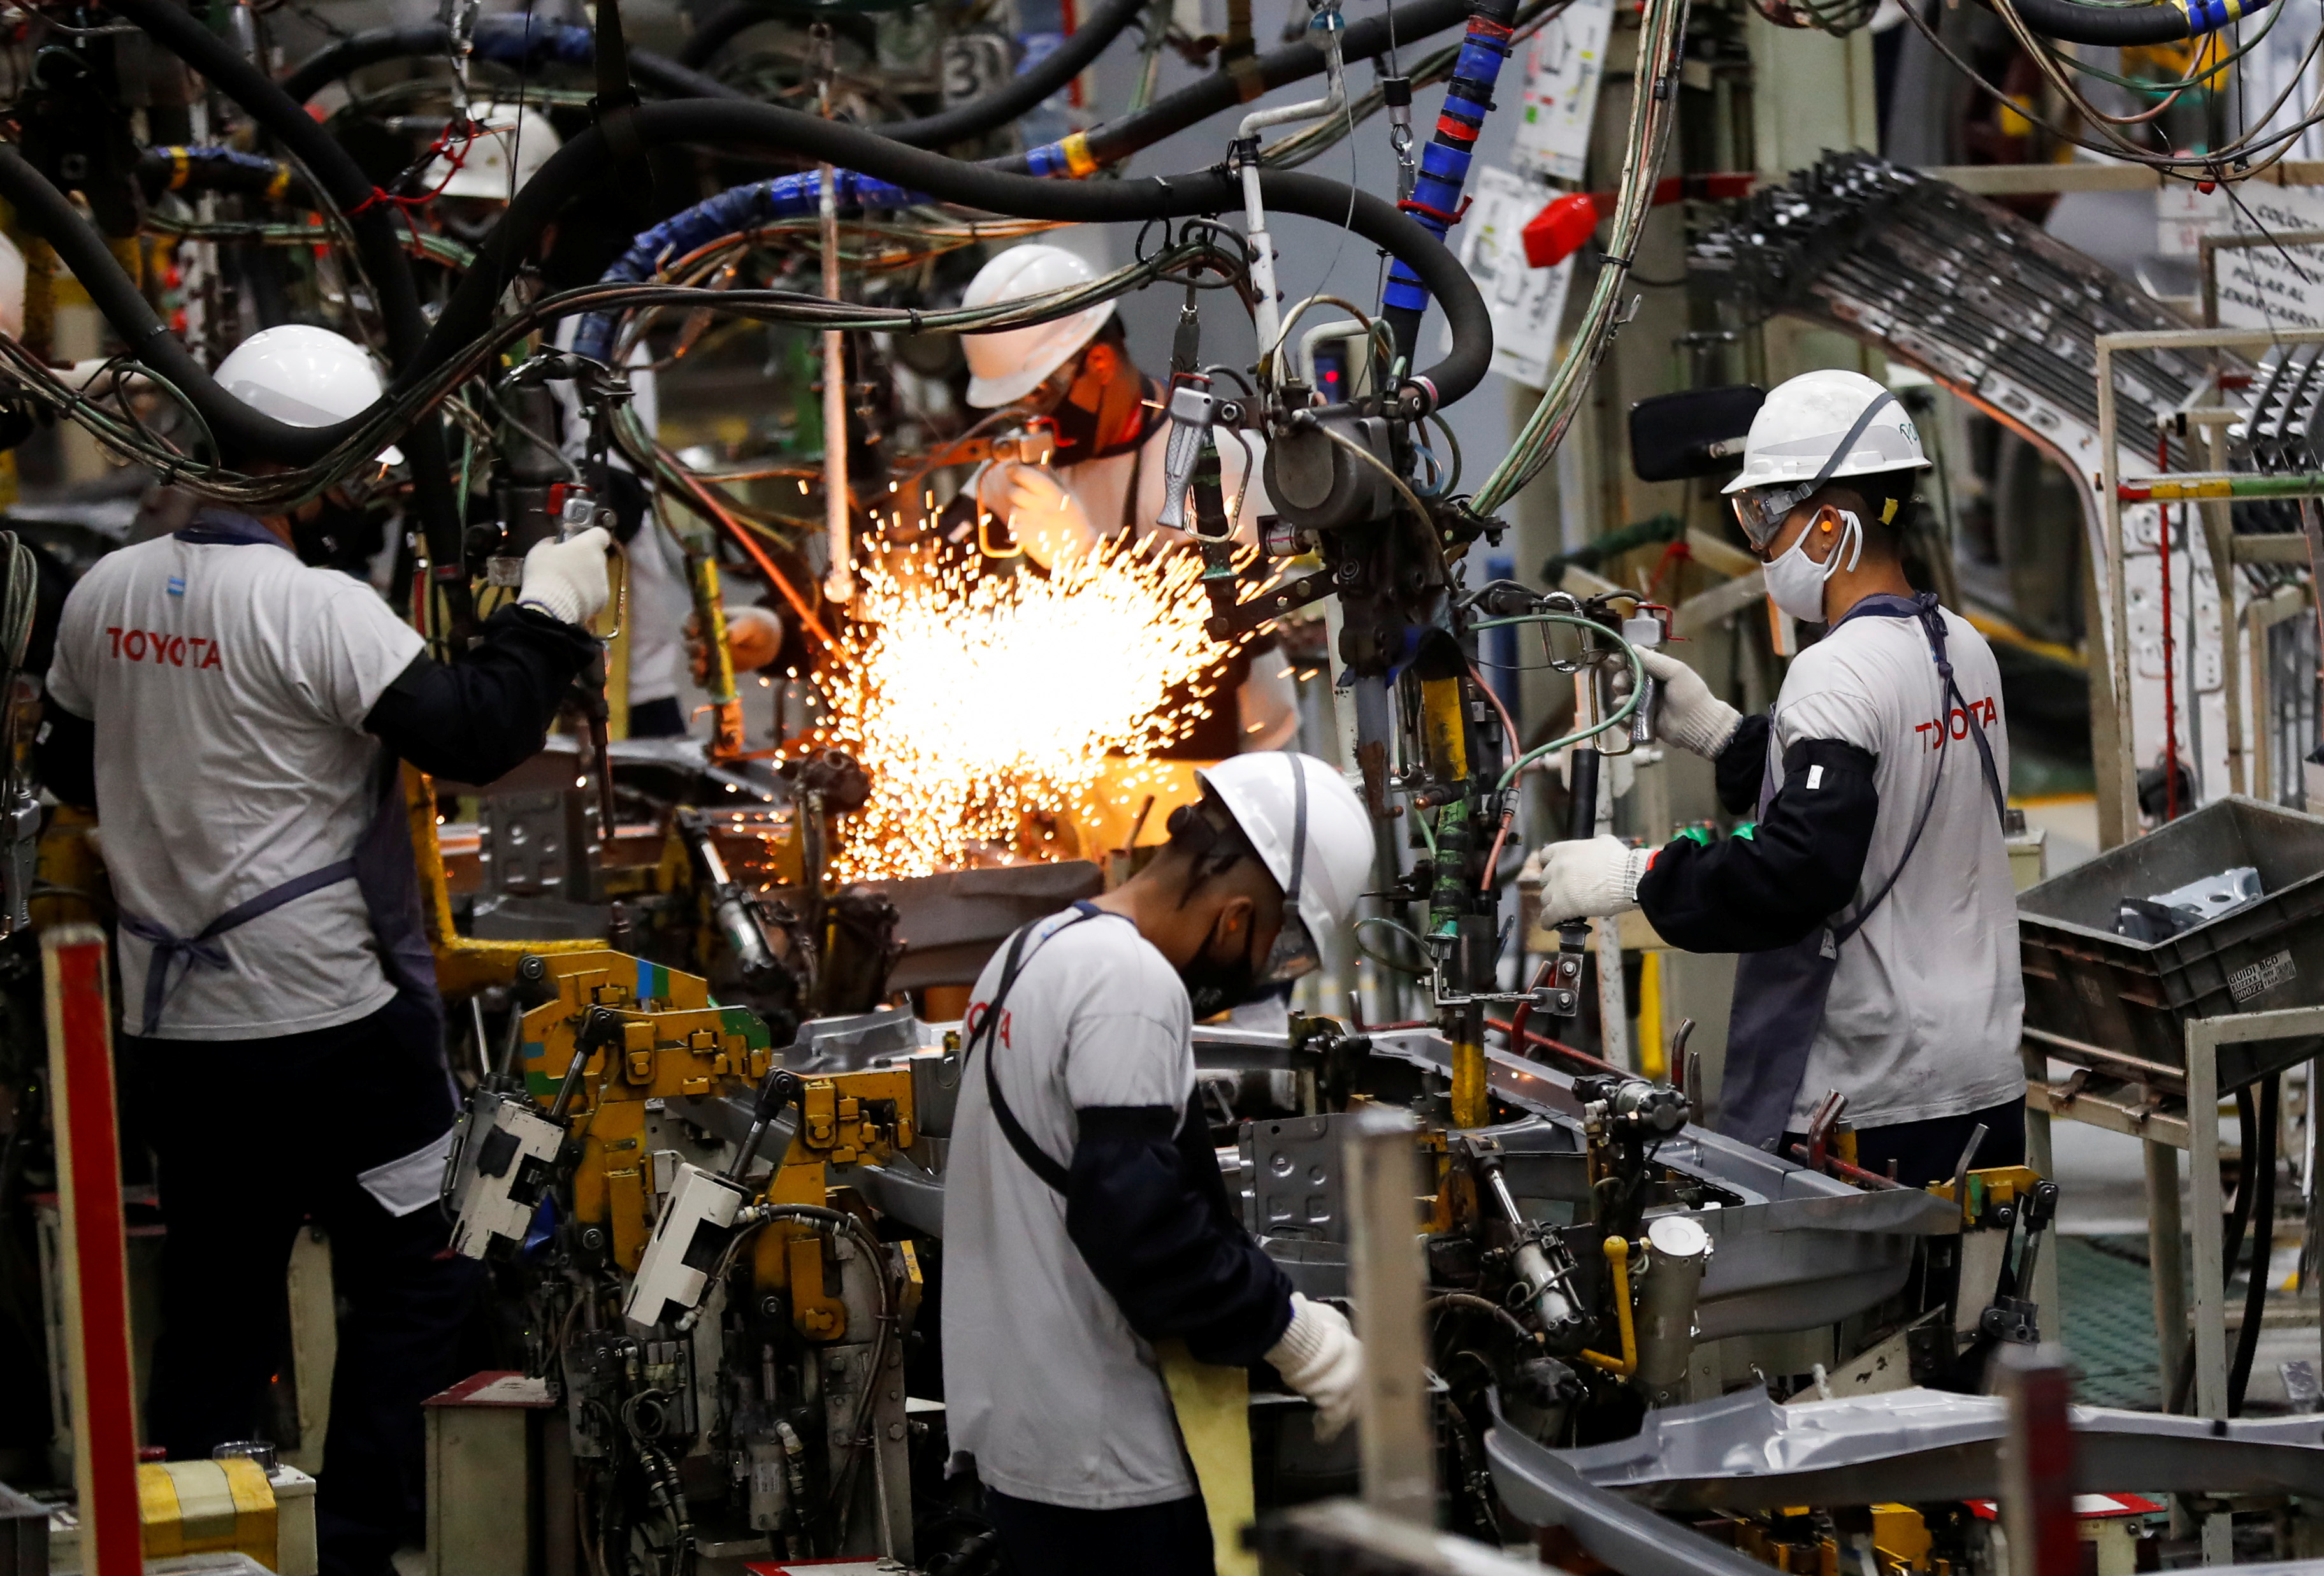 El caso de Toyota, que no pudo encontrar 200 trabajadores con secundario completo para trabajar en su planta de Zárate, encendió la polémica en la Argentina. (Foto: REUTERS/Agustin Marcarian)